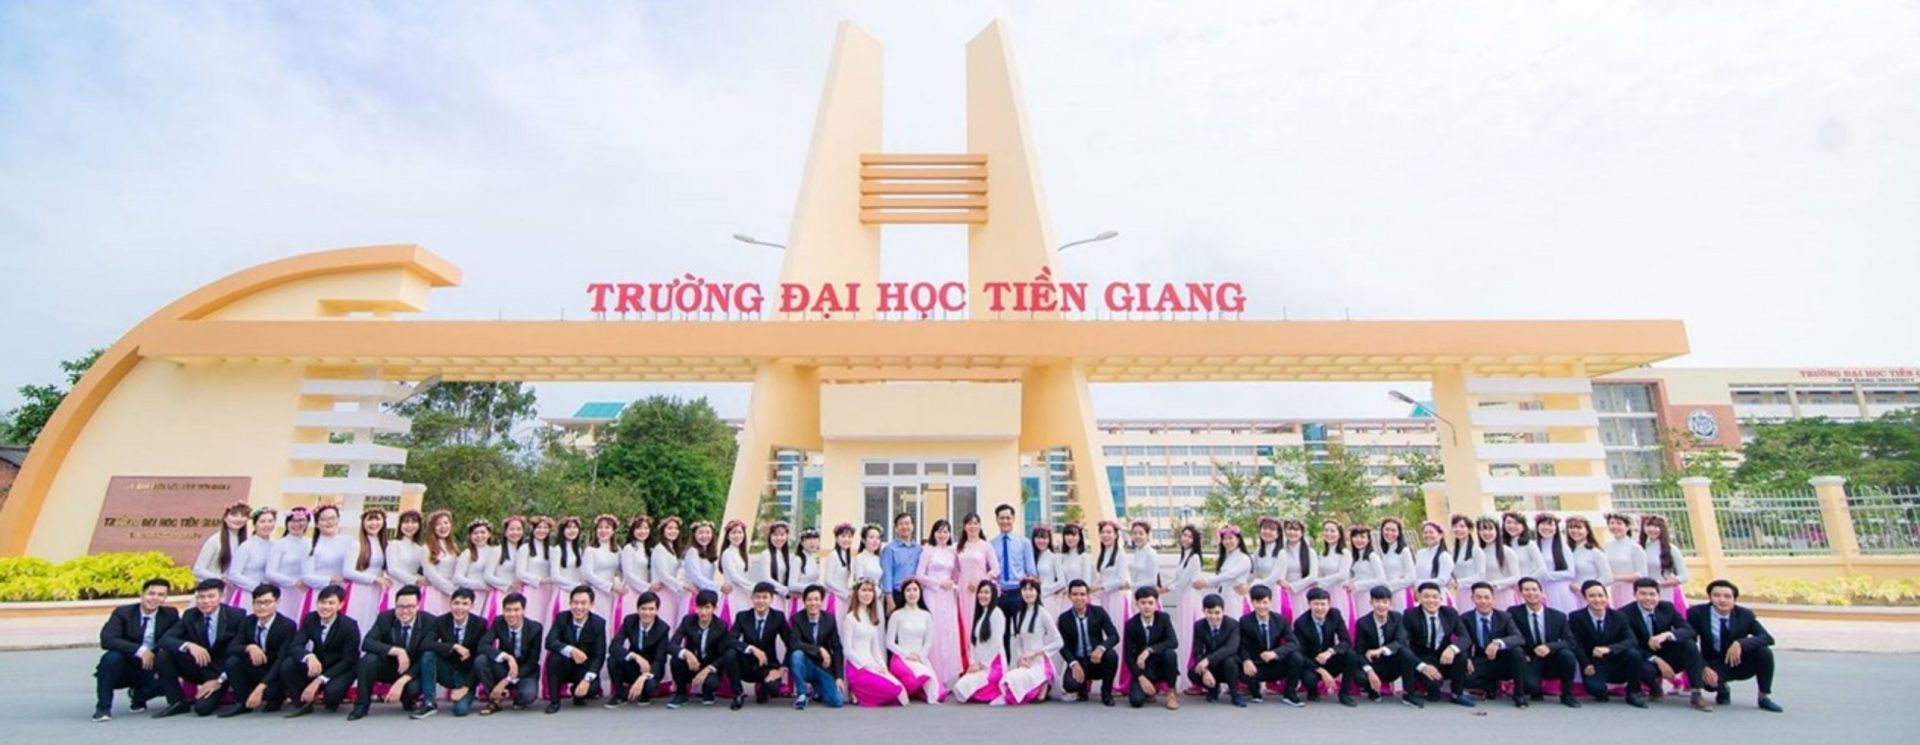 Đại học Tiền Giang